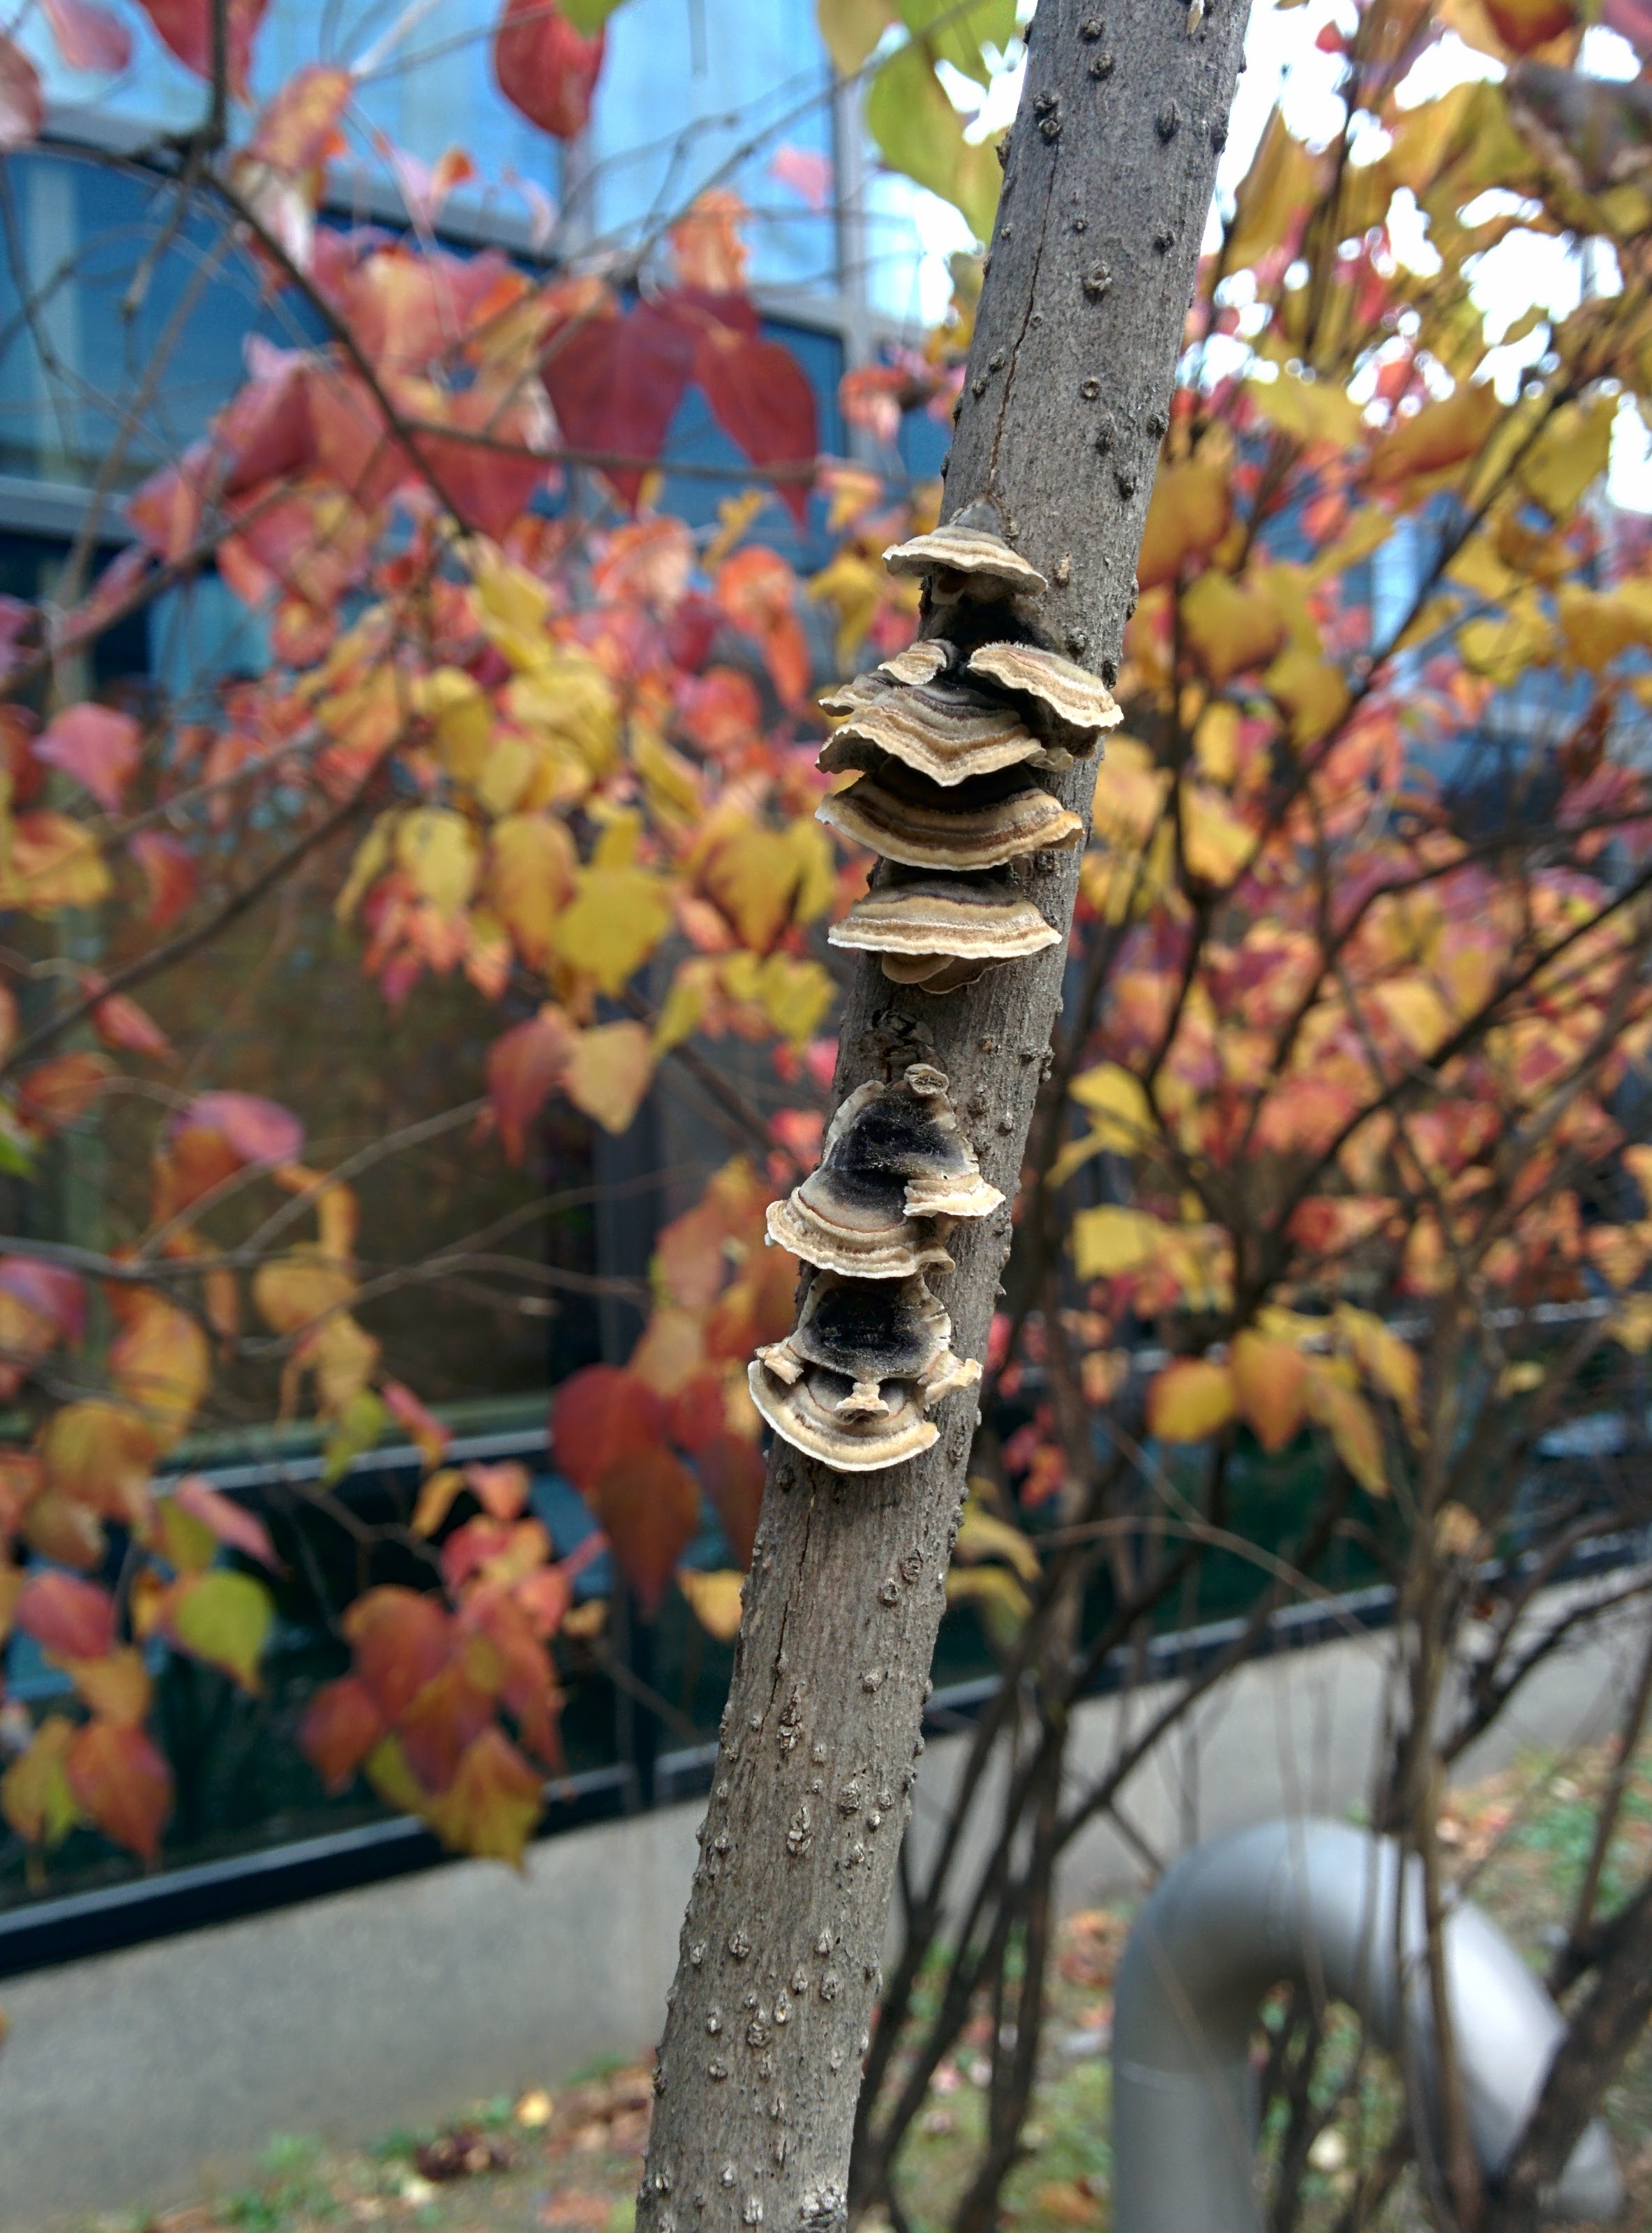 IMG_20151111_090013.jpg 라일락 나뭇가지에 붙어 자라는 버섯... 조개껍질버섯?